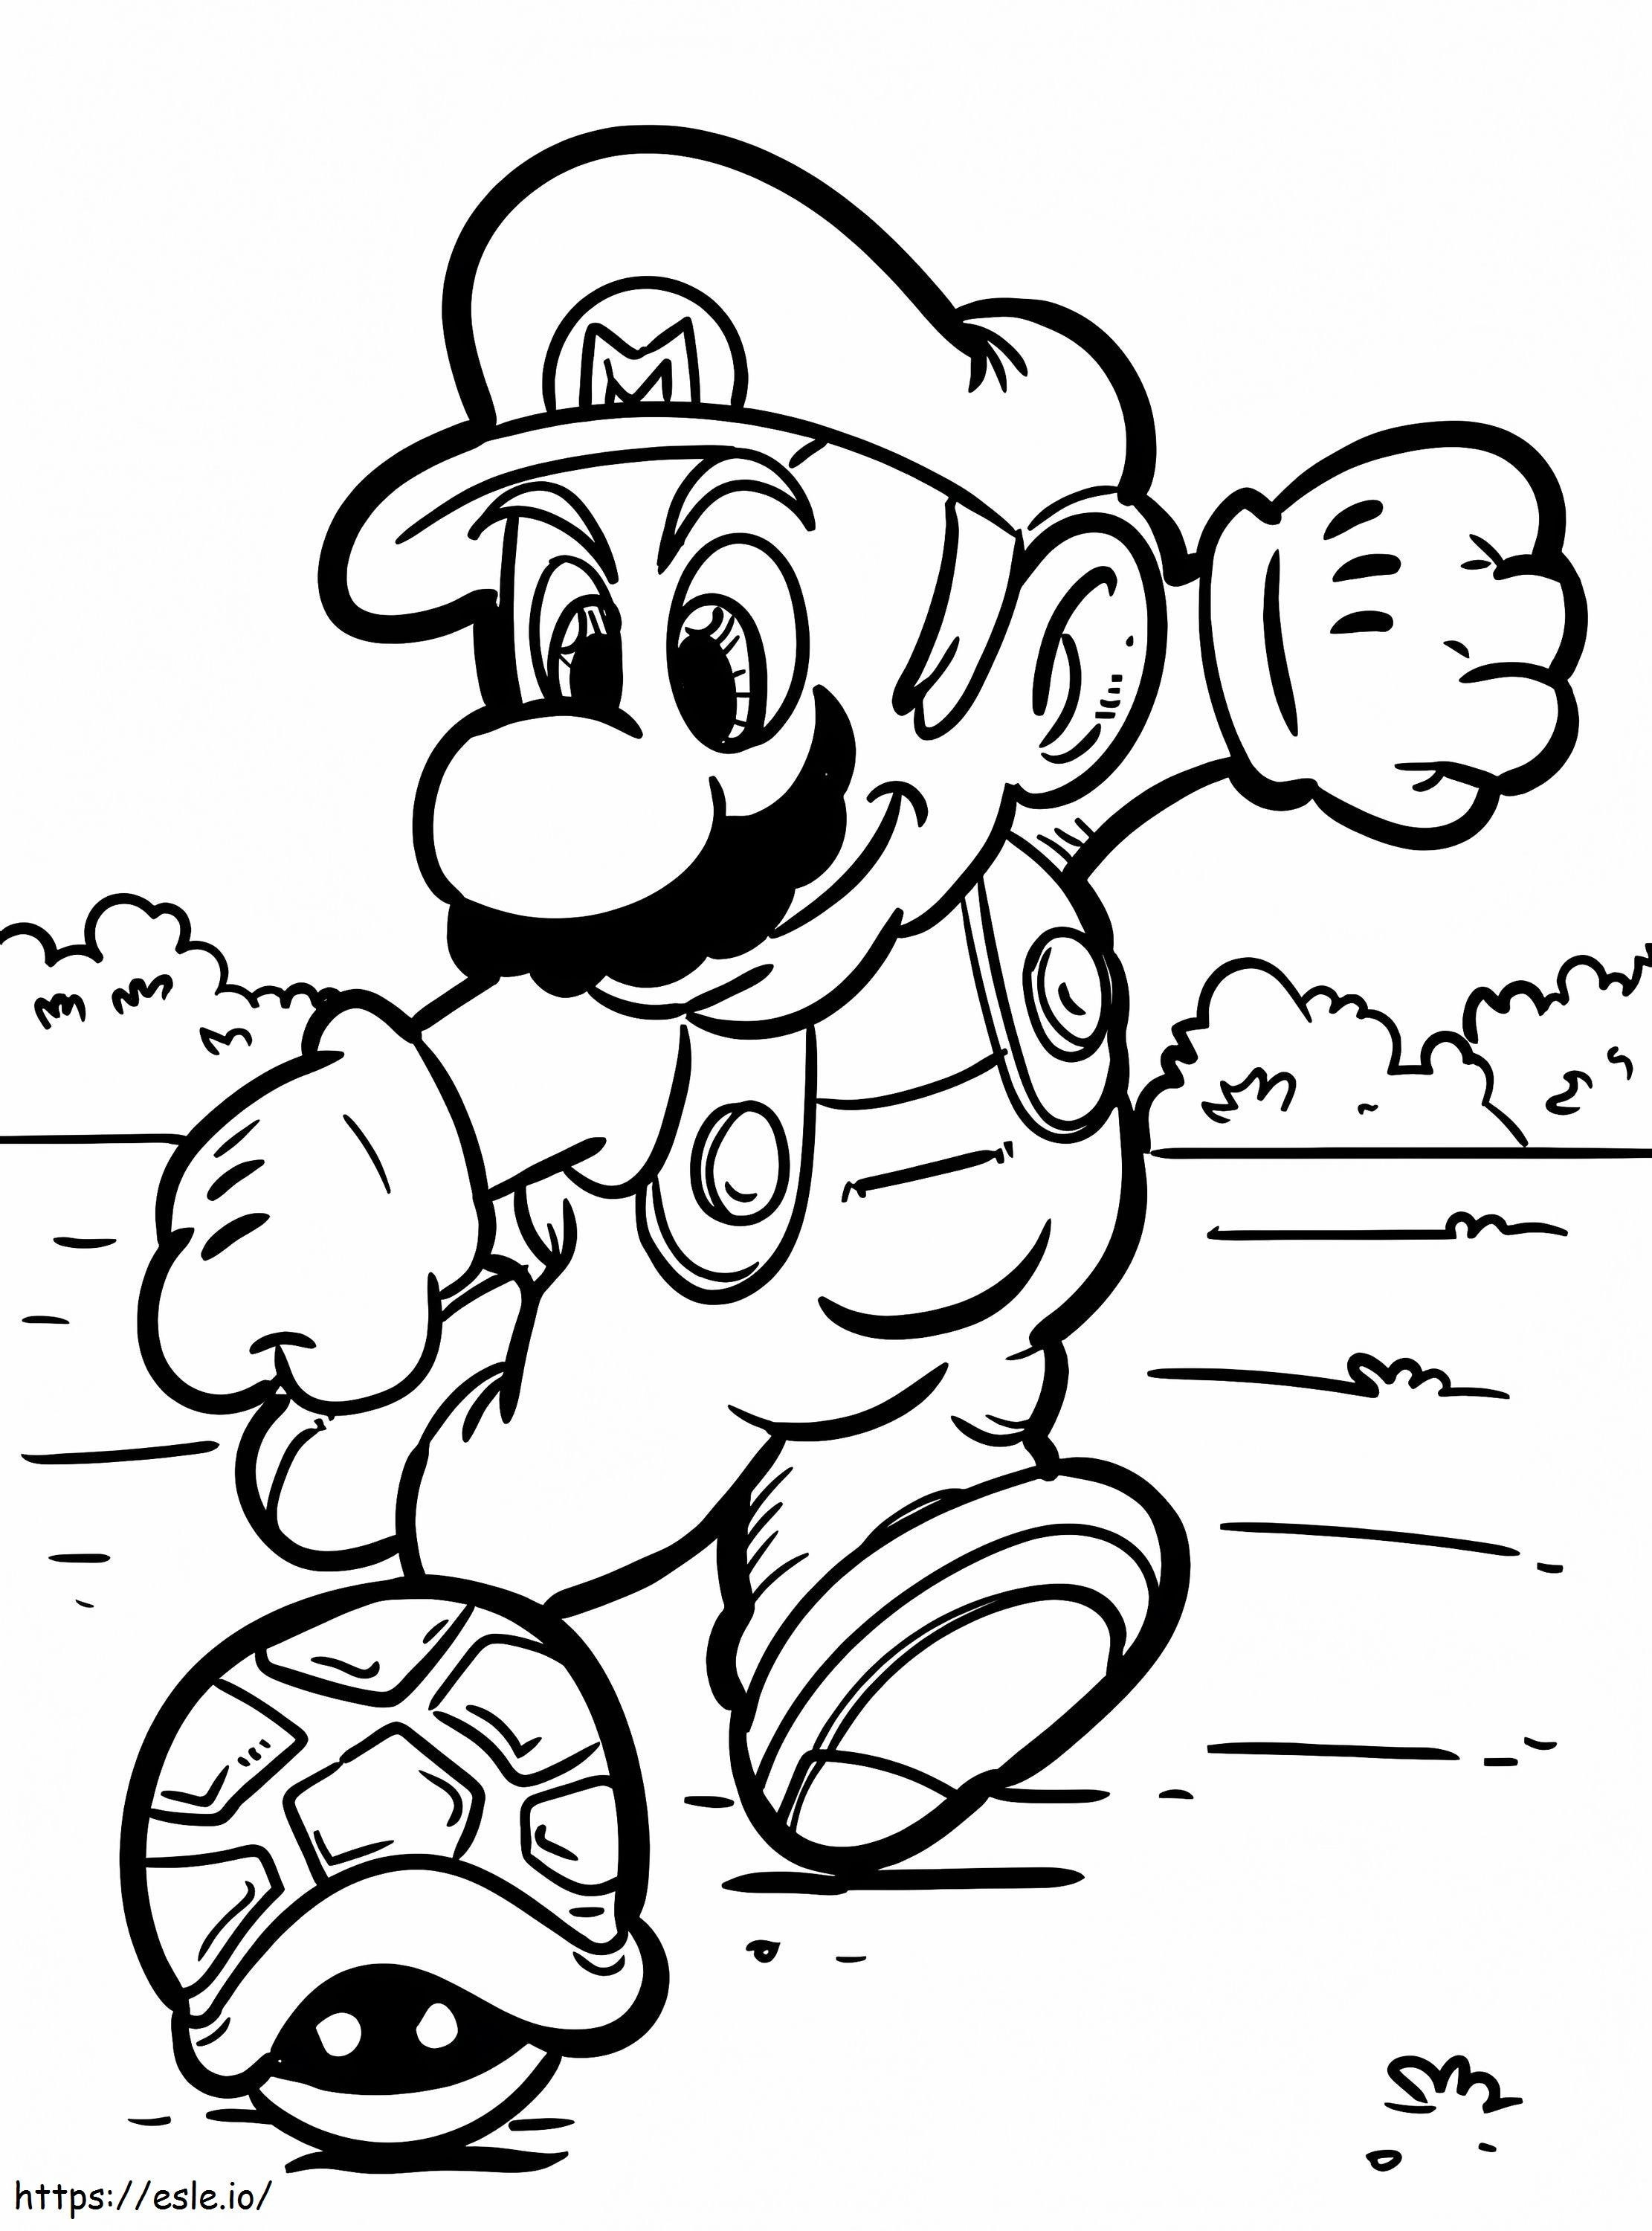 Mario Tekmeler boyama